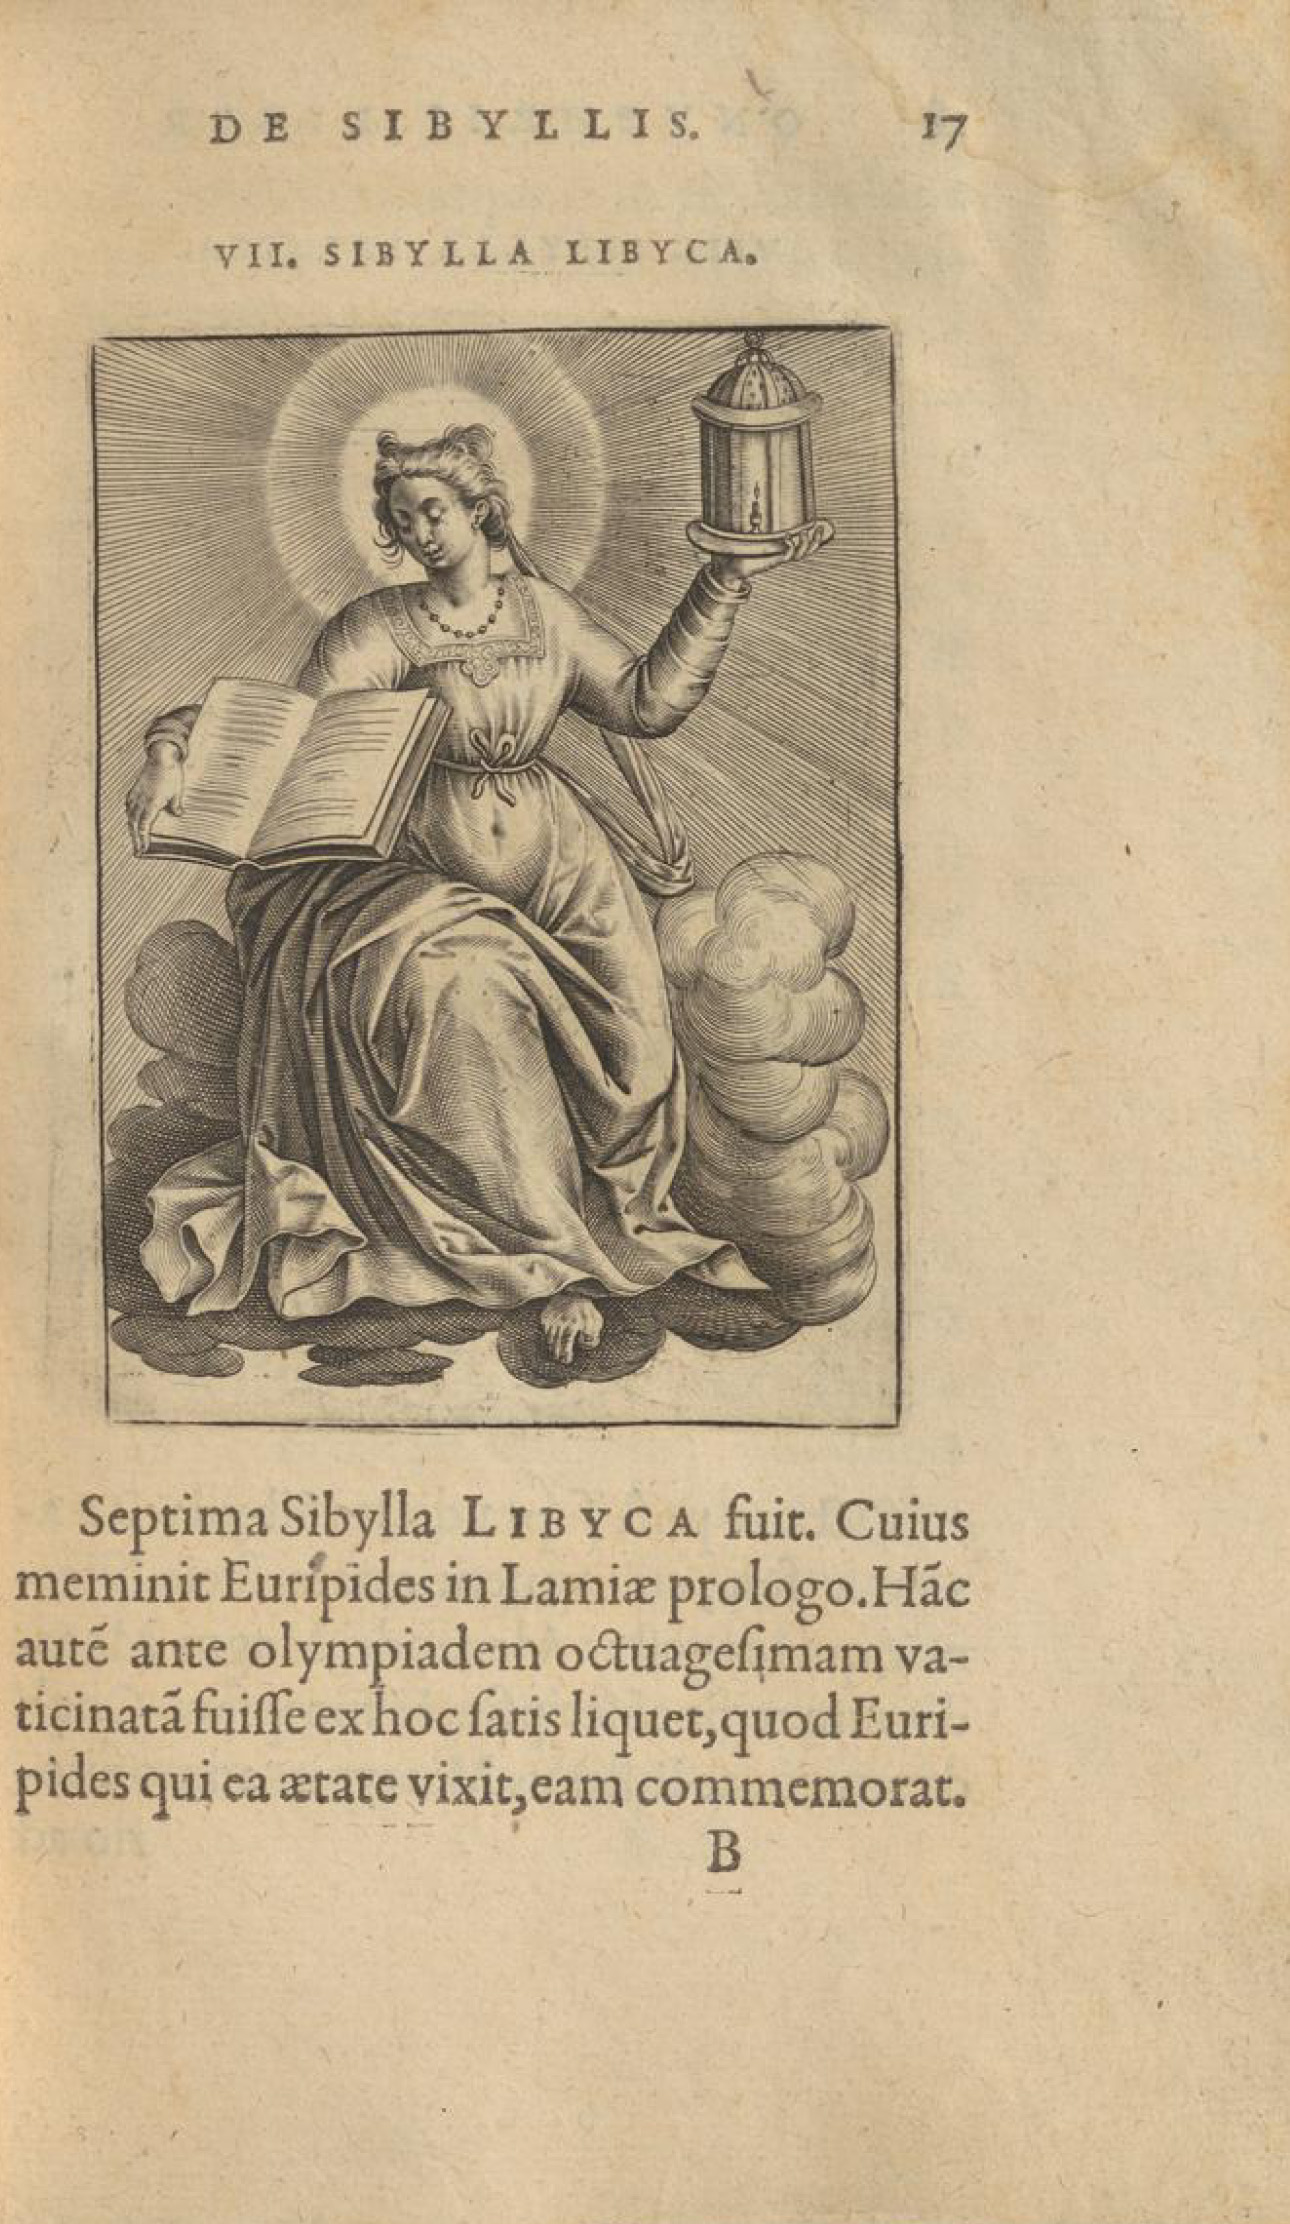 Illustration eines Sibyllinischen Orakel samt vermeintlichen Orakelspruch.